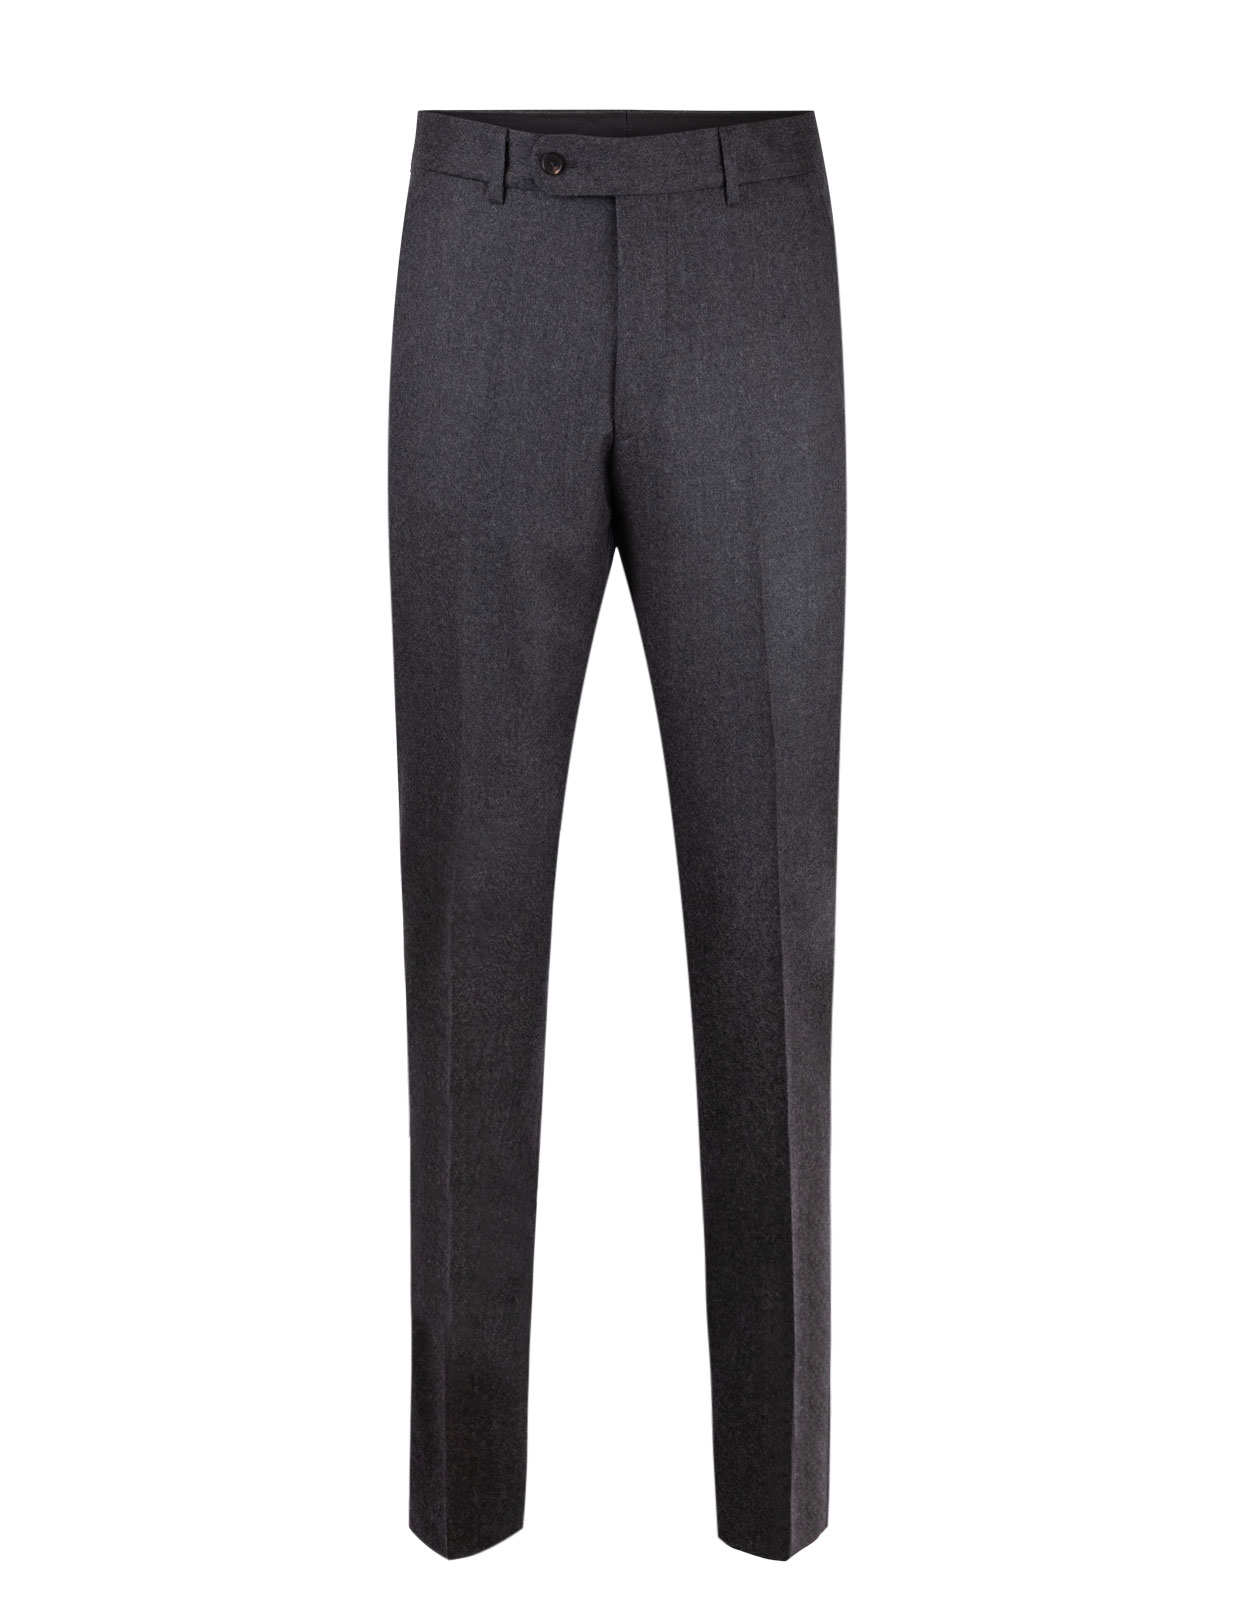 Enzo Slim Trousers Super 120 Flannel Antracite